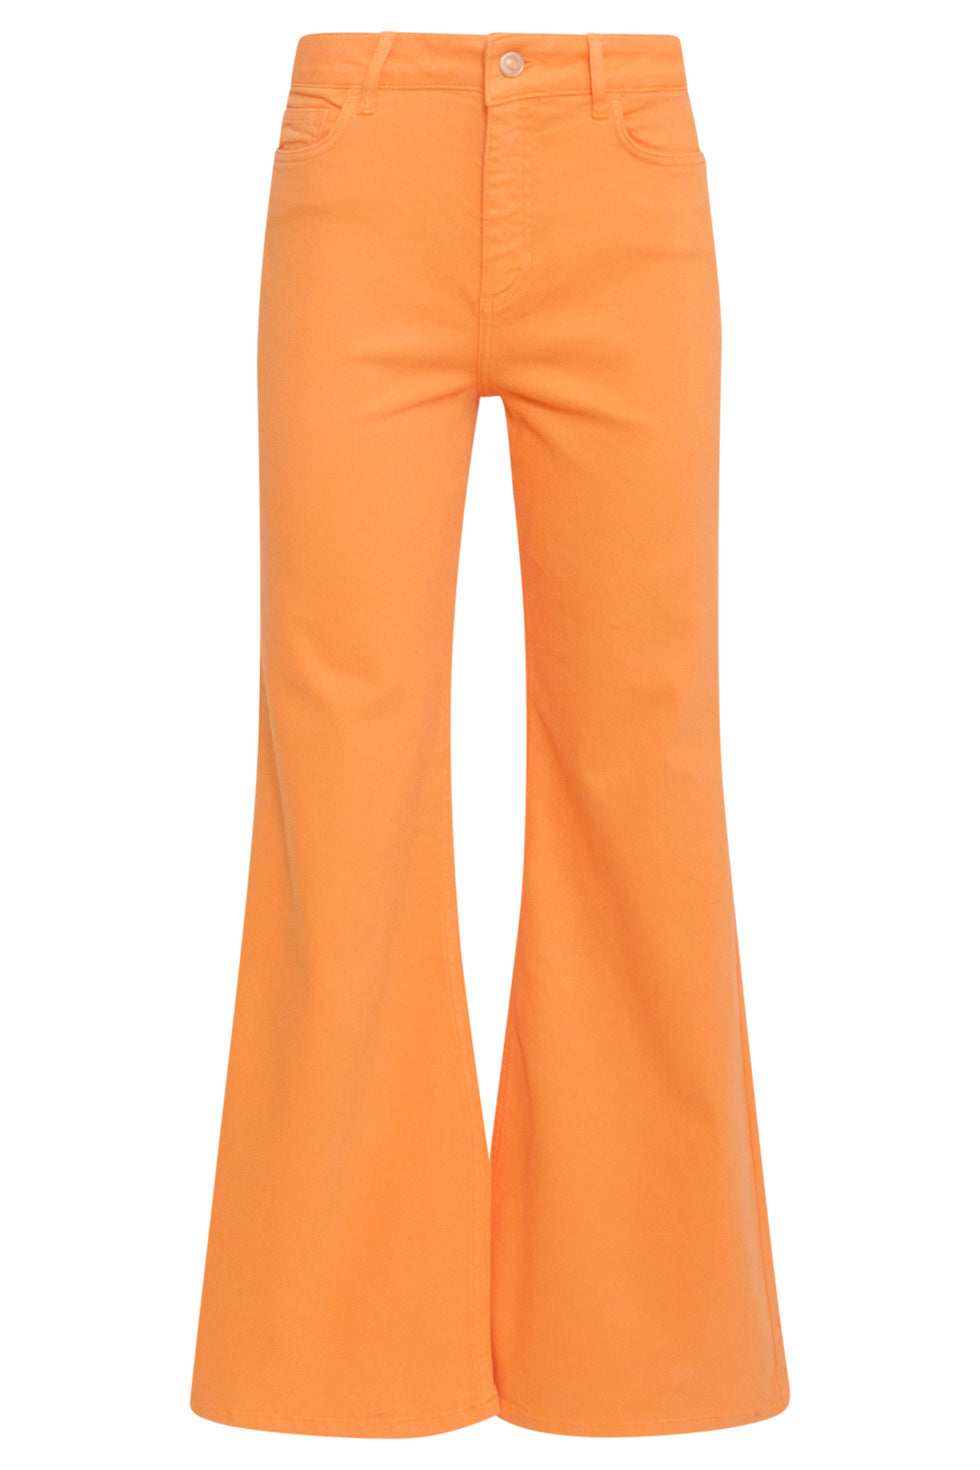 24169 Oranje Flared Jeans